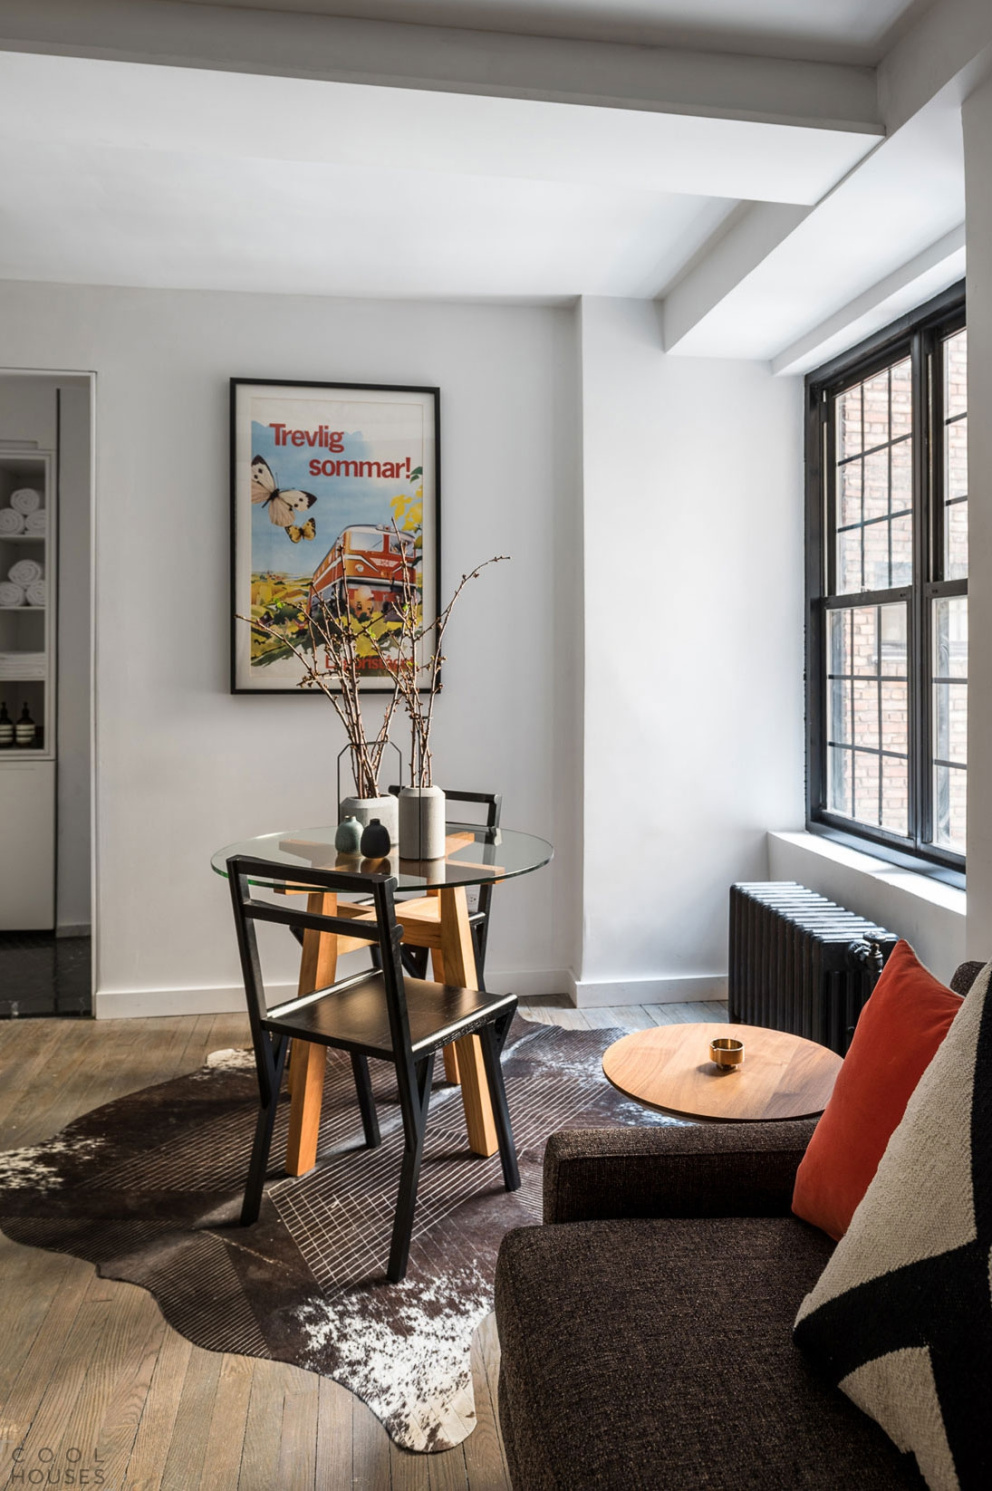 Šikovní bytoví designéři dokázali svým praktickým řešením hodnotu malého&nbsp;bytu na Manhattanu ještě zvýšit.
